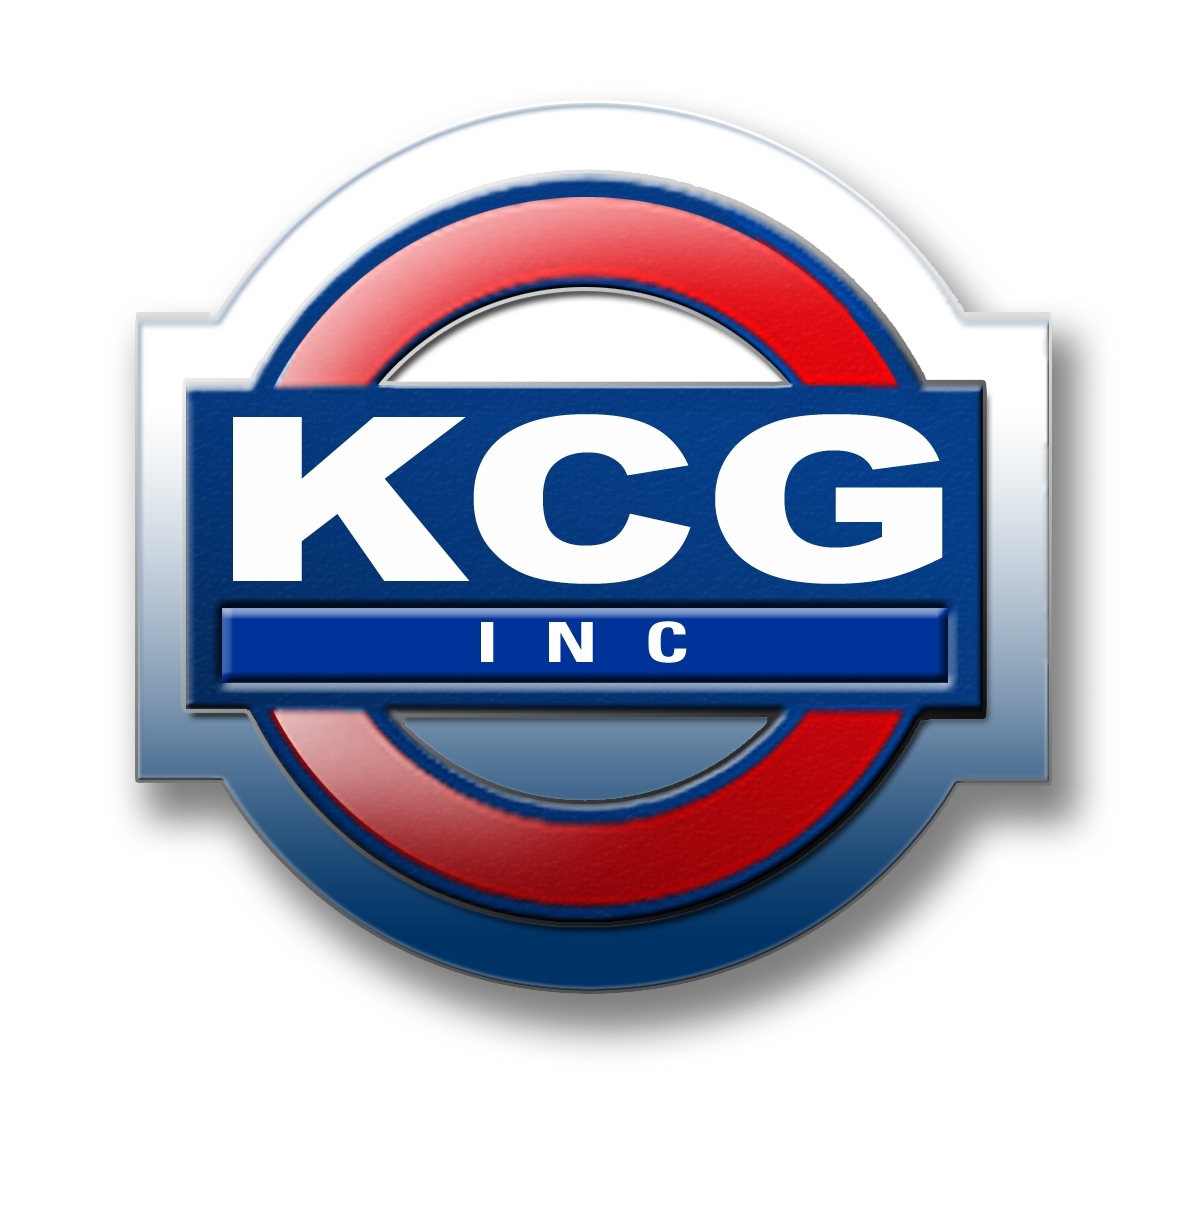 KCG Inc